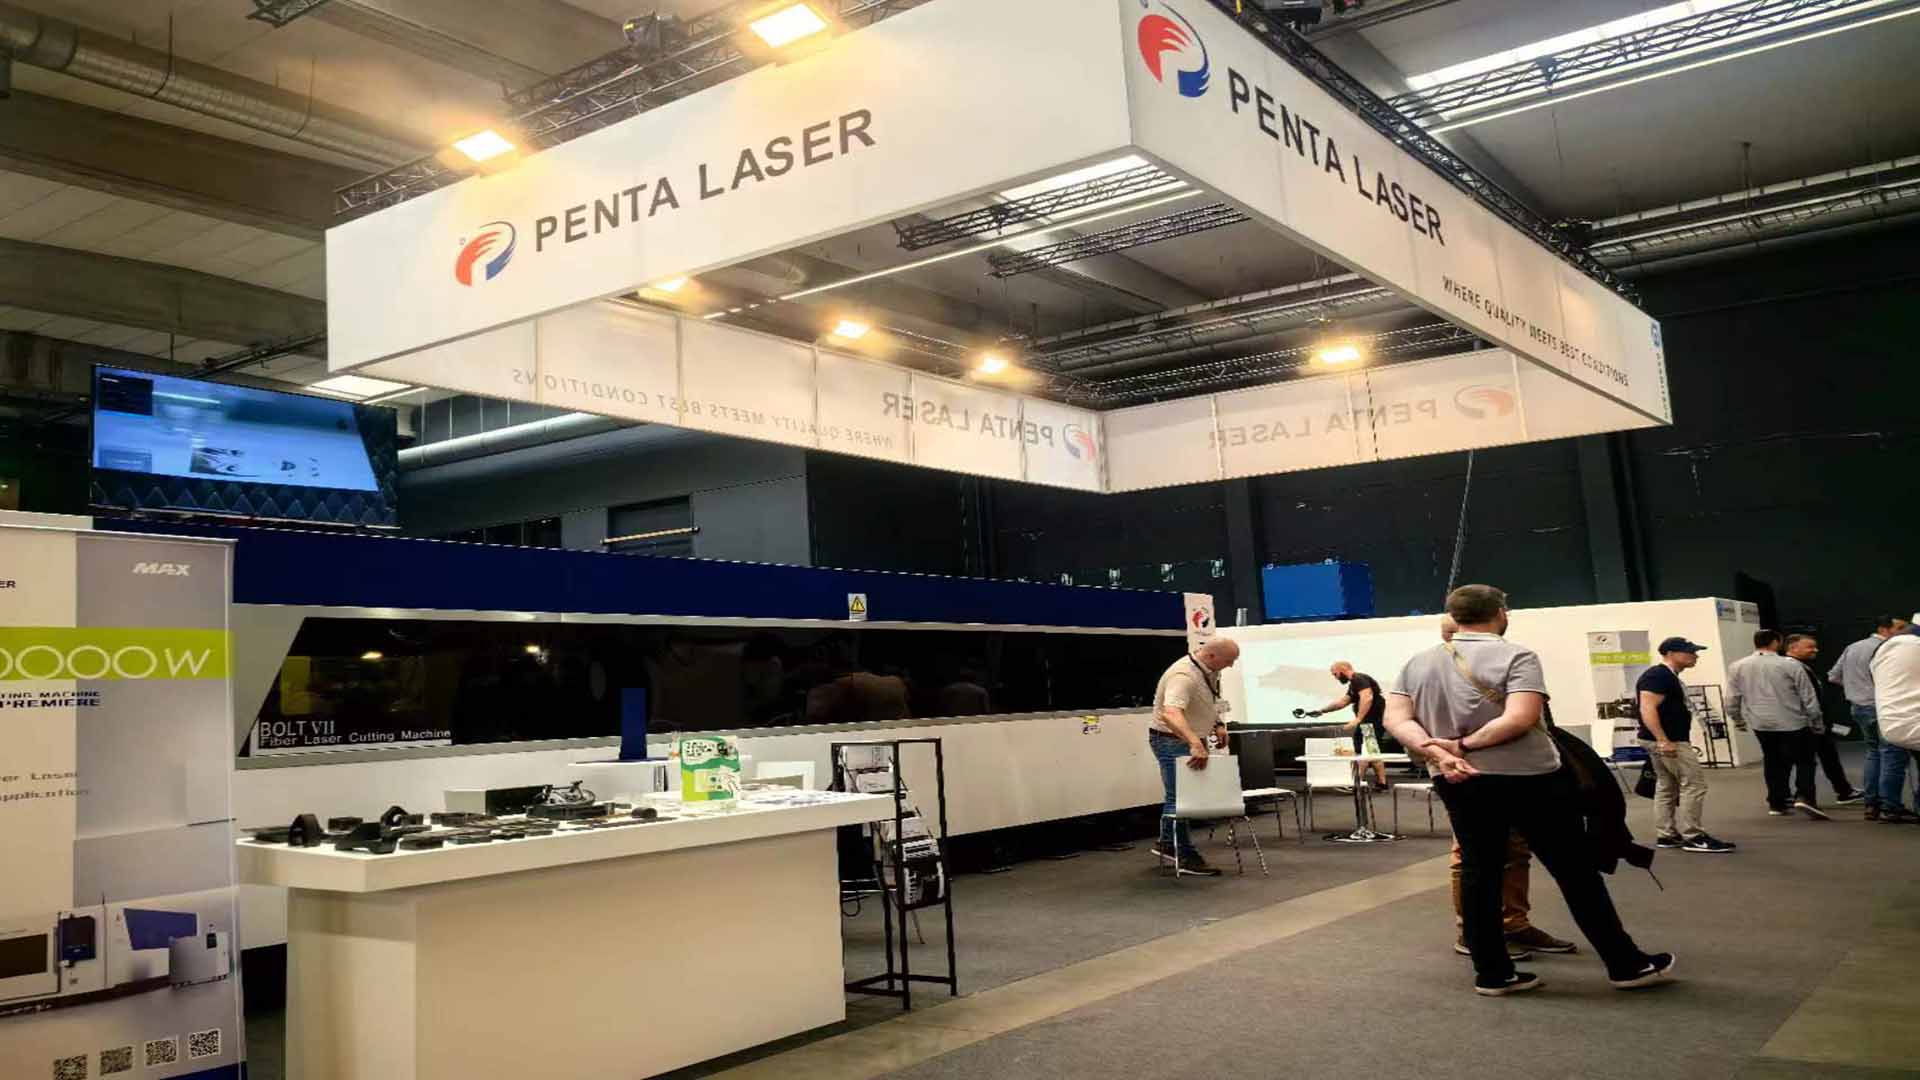 Бельгия и Таиланд работают вместе на двойных выставках, серия Penta Laser BOLT 7 привлекает внимание всего мира